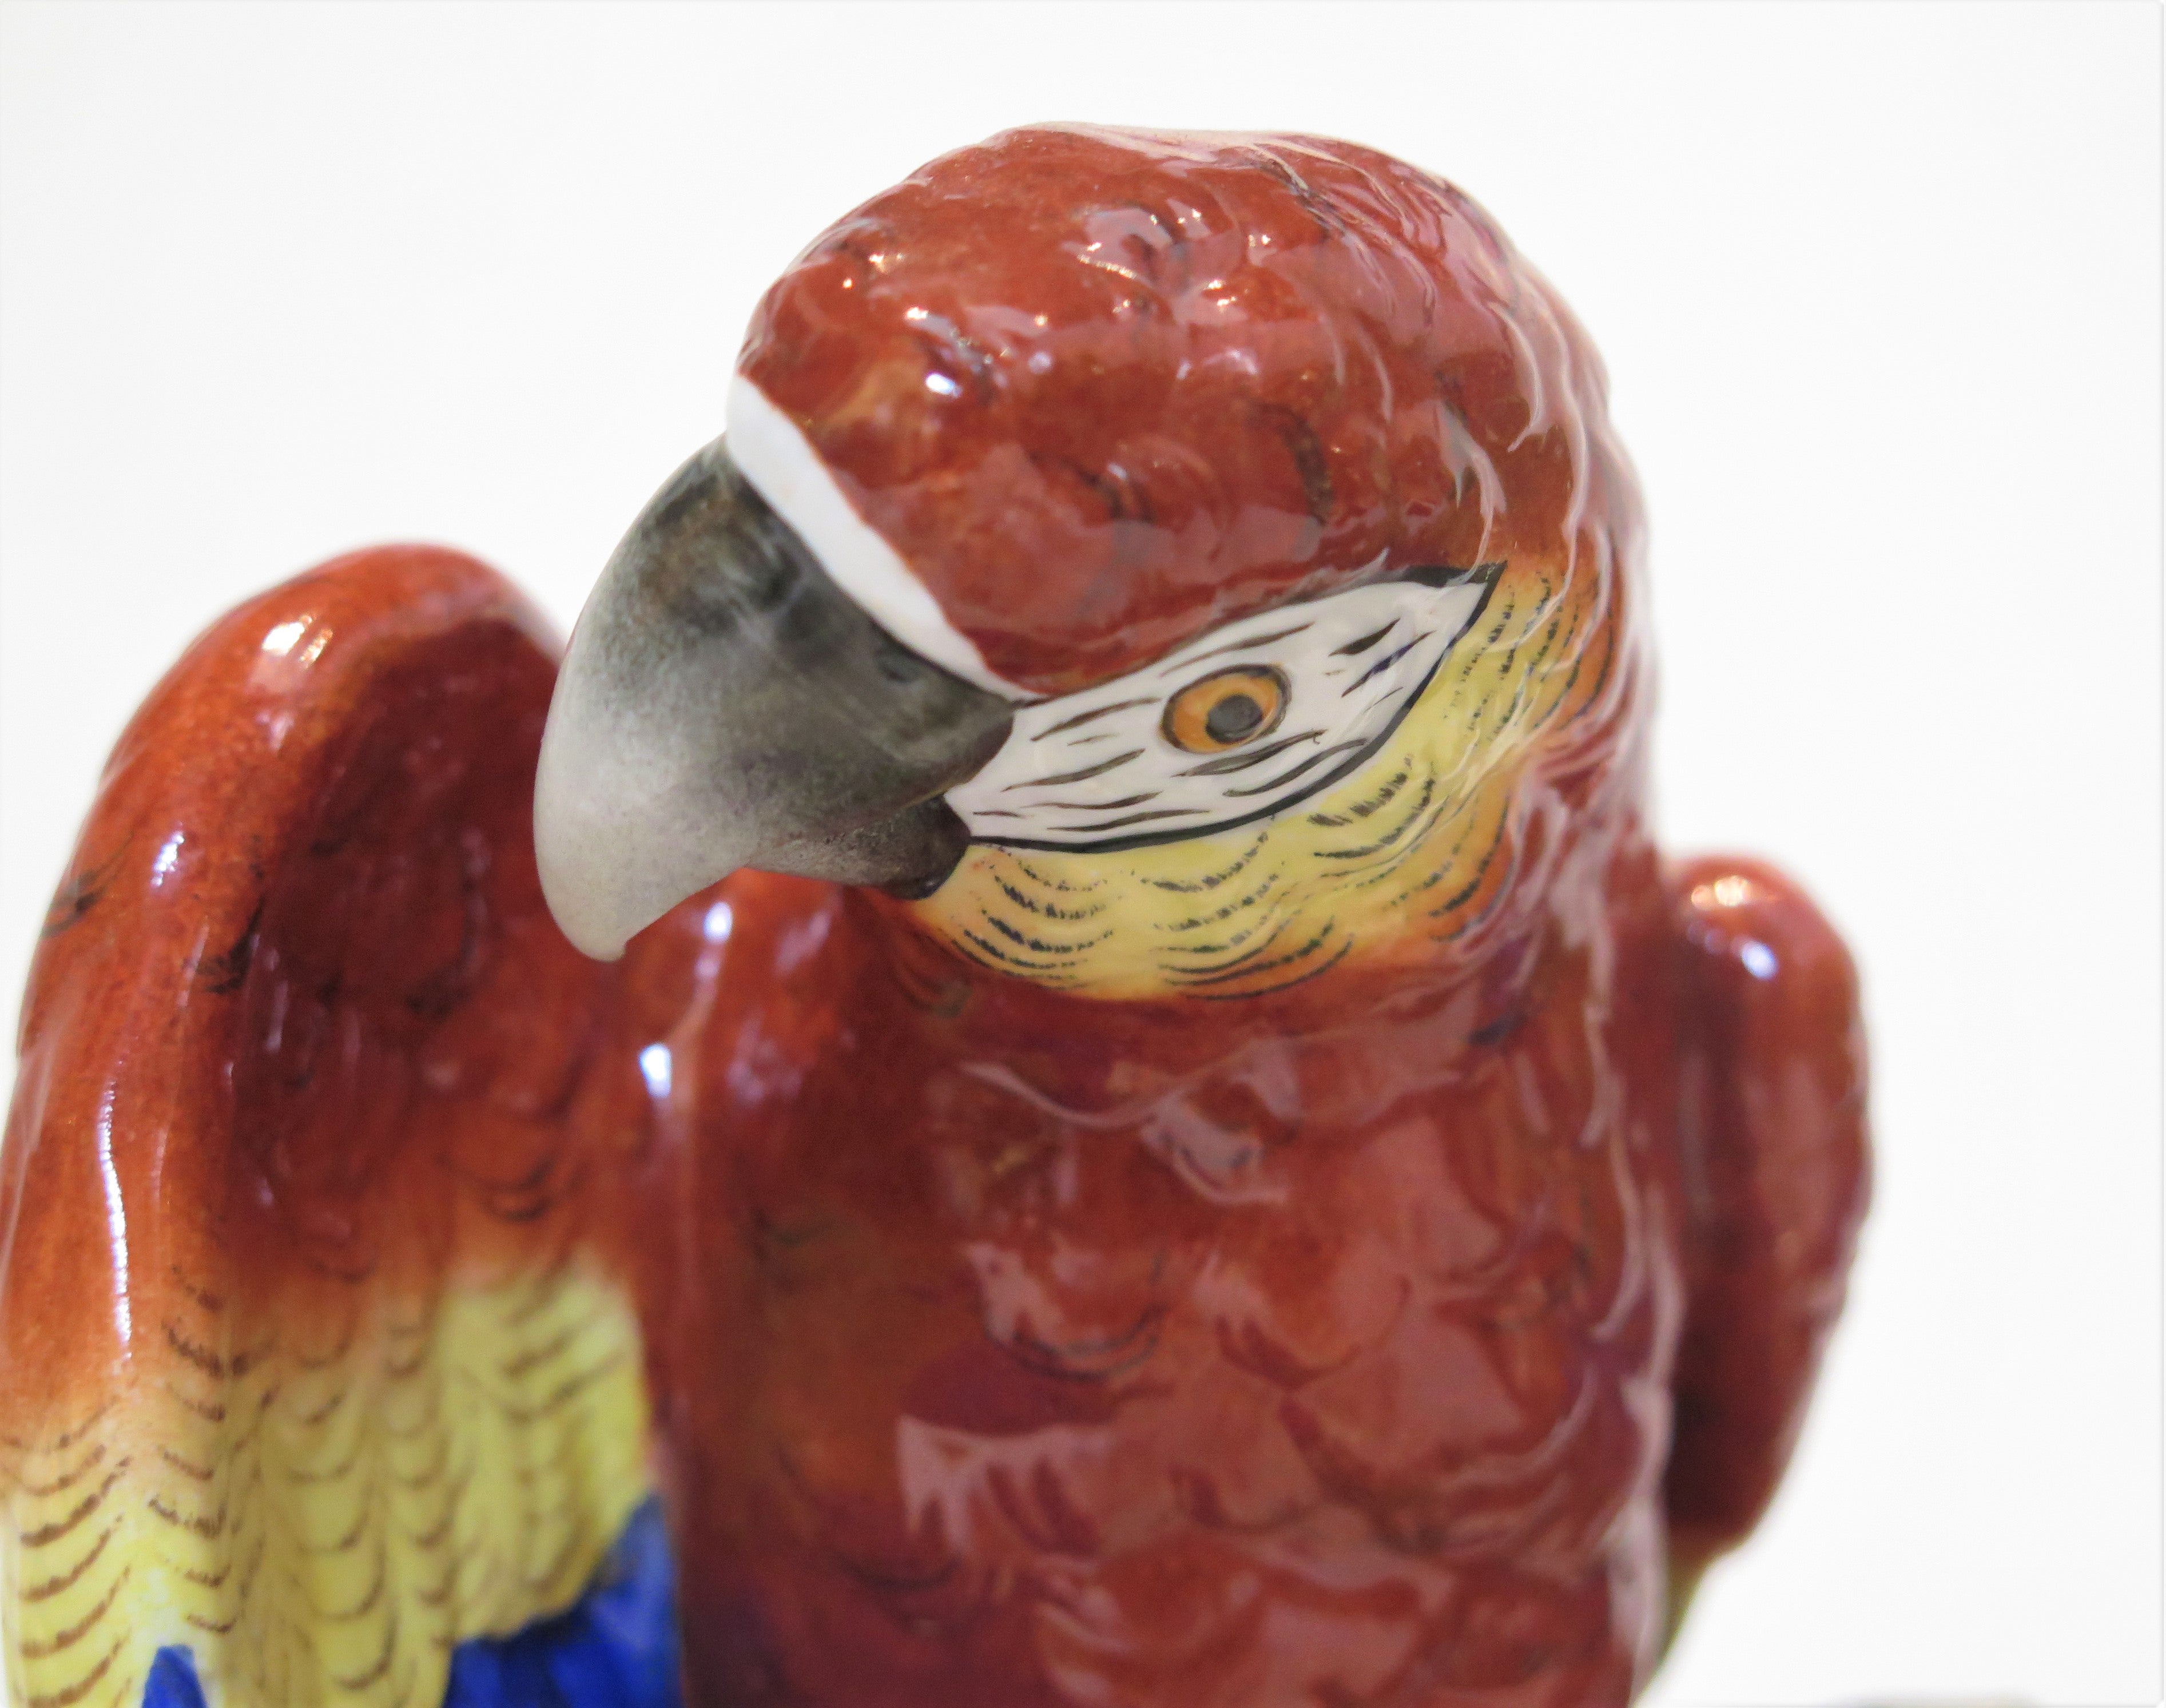 Pair of Porcelain Parrots by Sitzendorf Porzellan Manufaktur A.G.